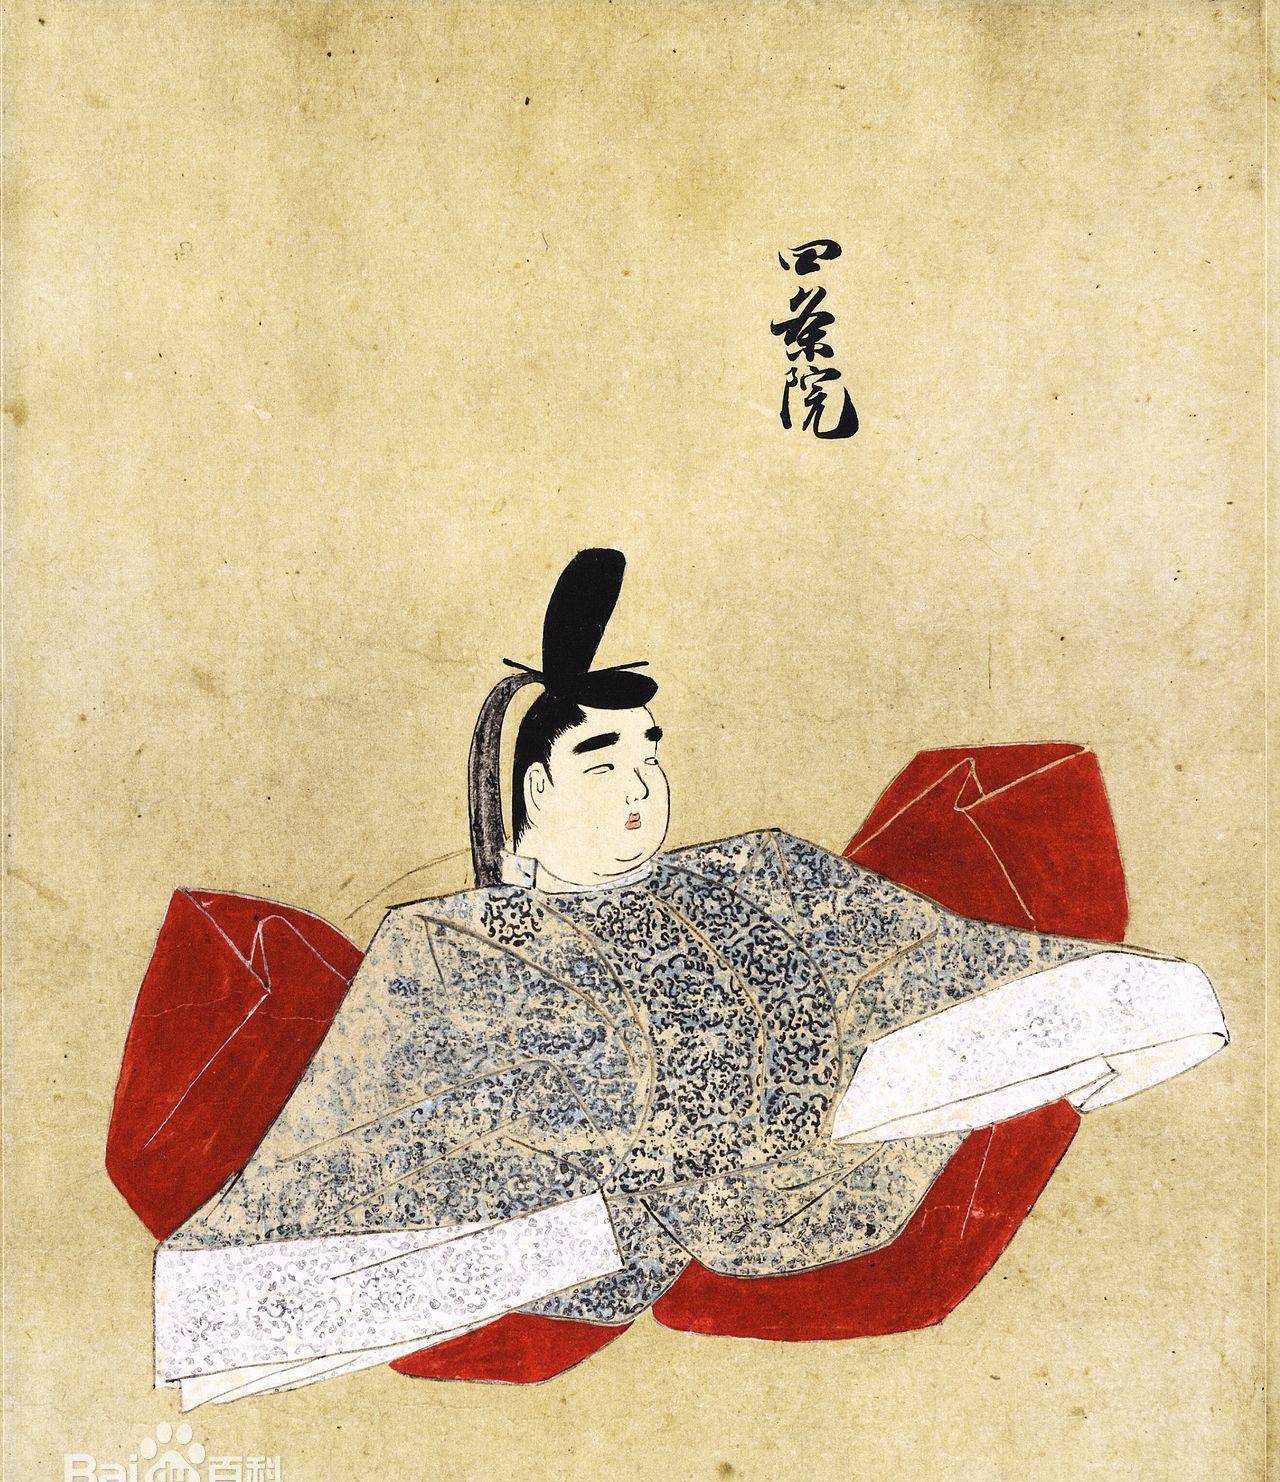 1242年),名秀仁,日本菊花王朝第87代天皇,父亲后堀河天皇(第86代天皇)